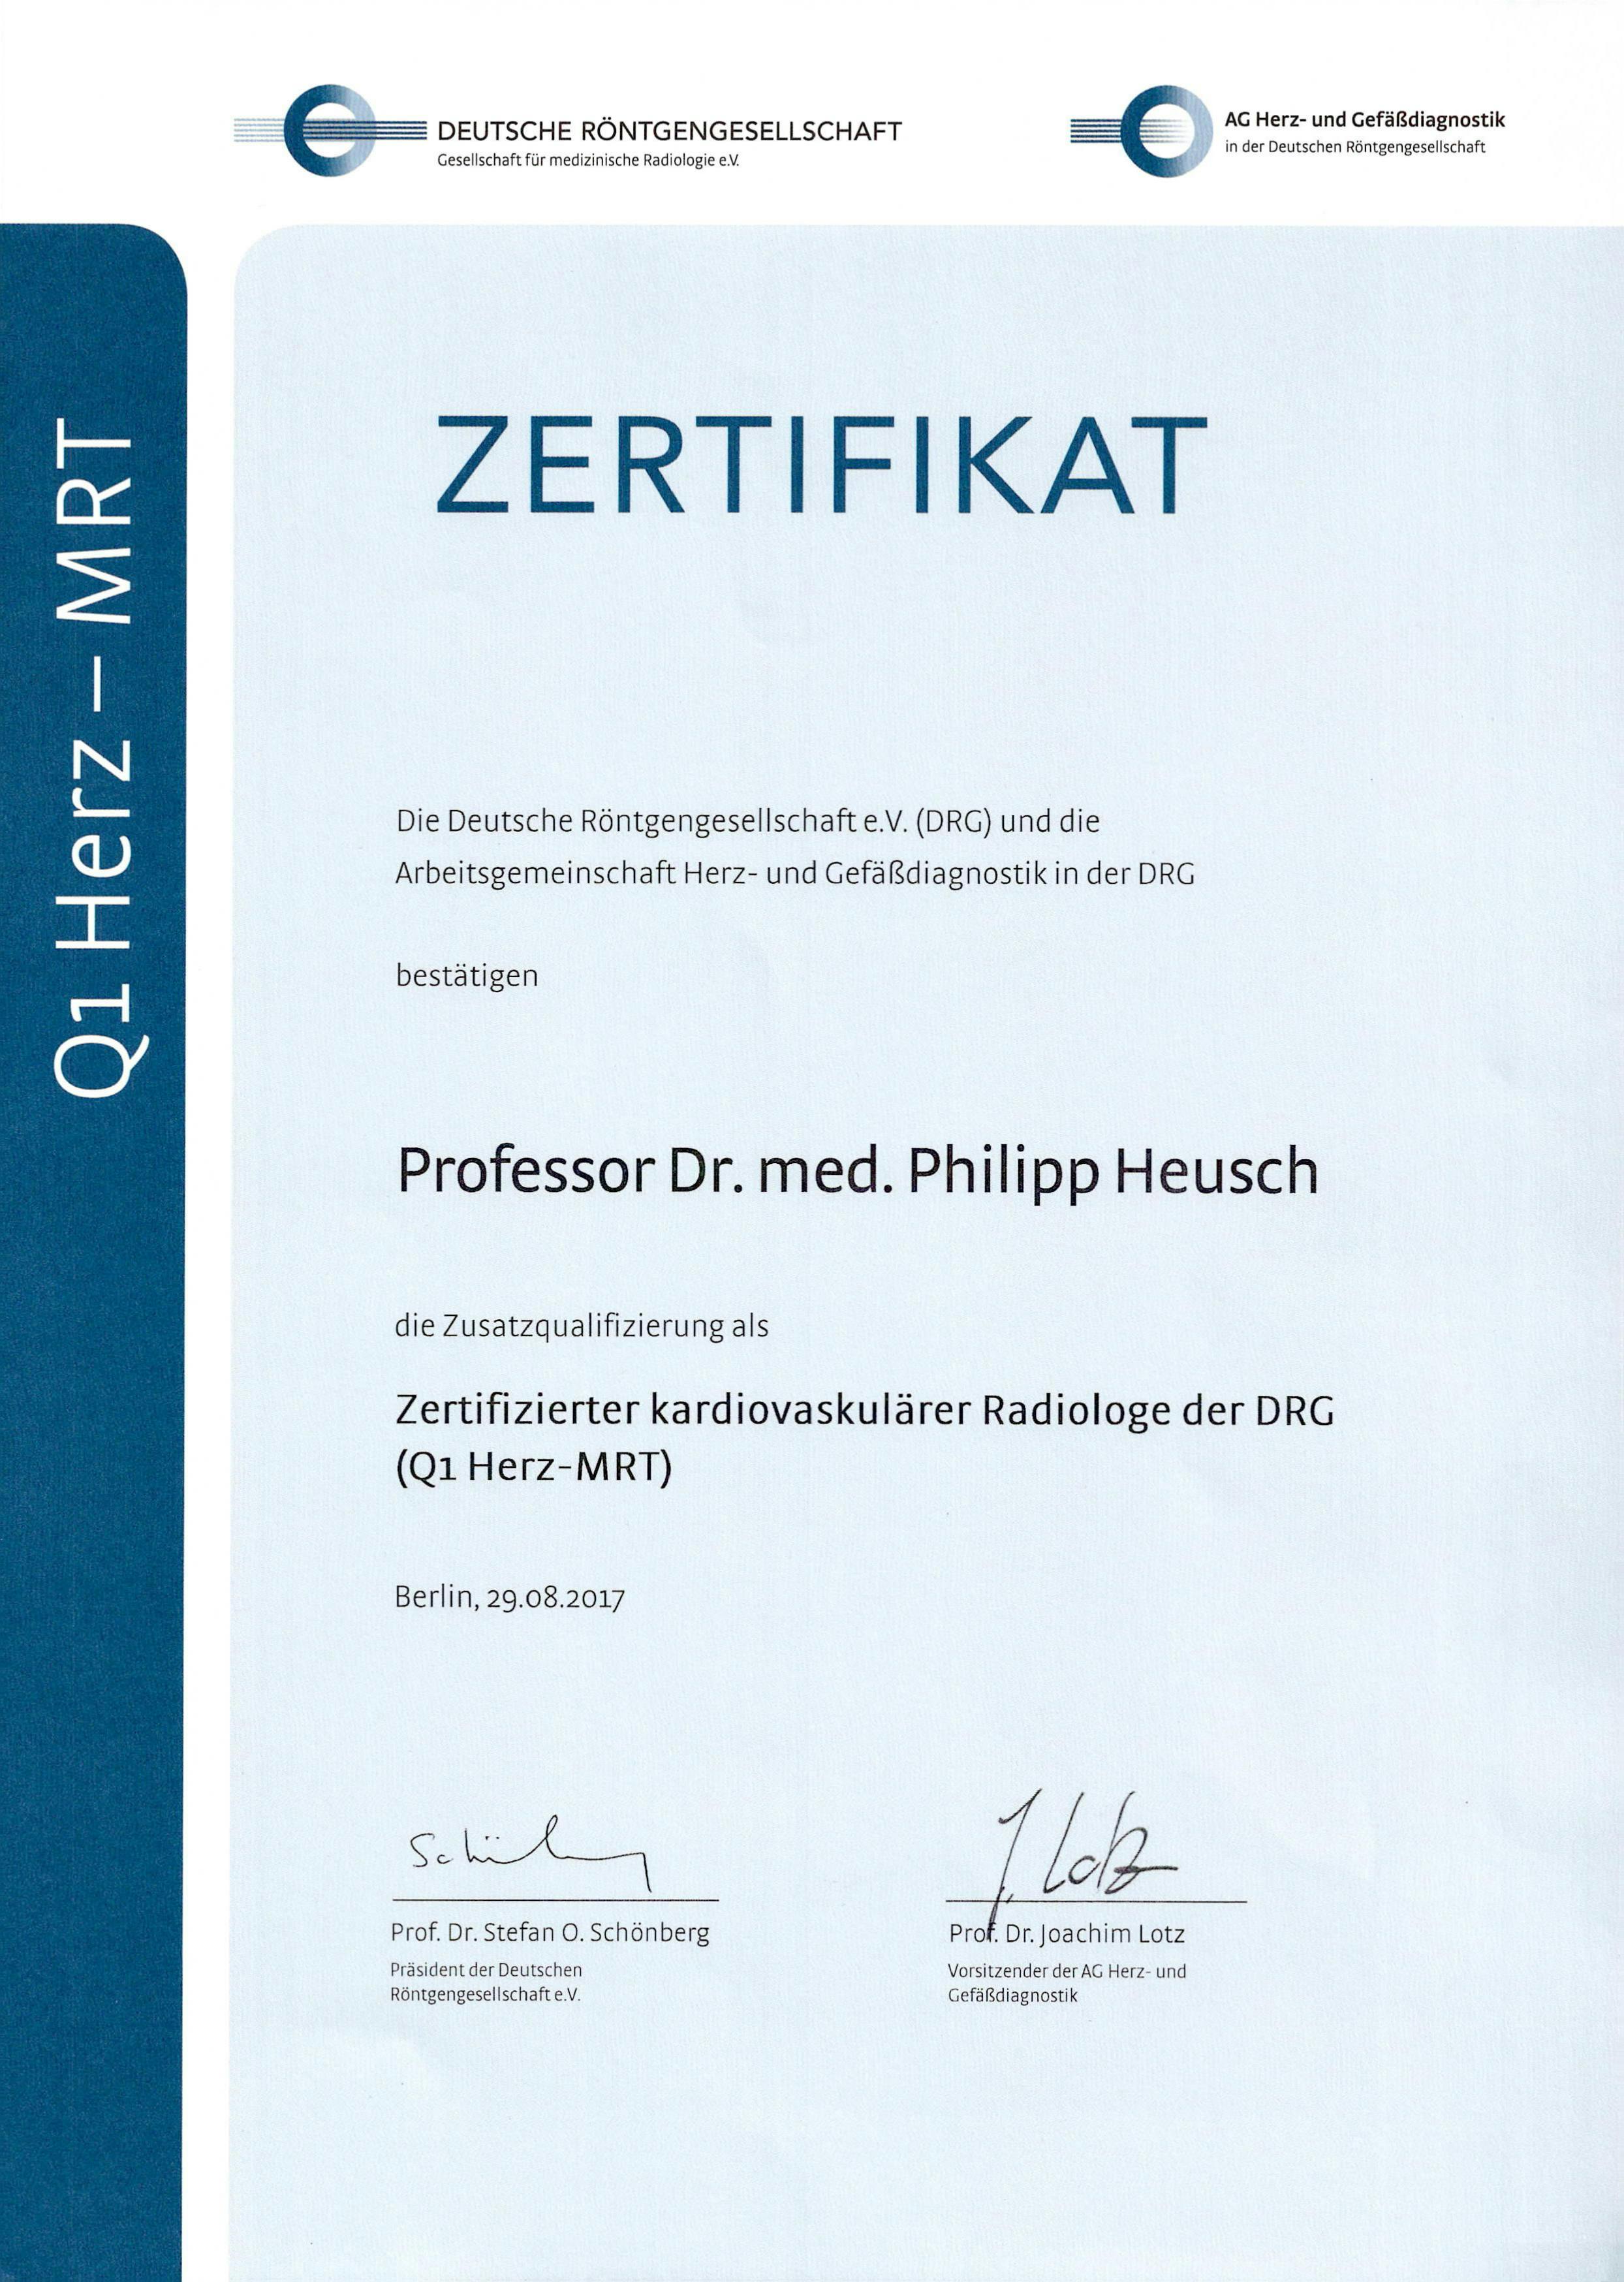 Zertifikat der Deutschen Röntgengesellschaft für kardiovaskuläre Radiologie (Q1 Herz-MRT)